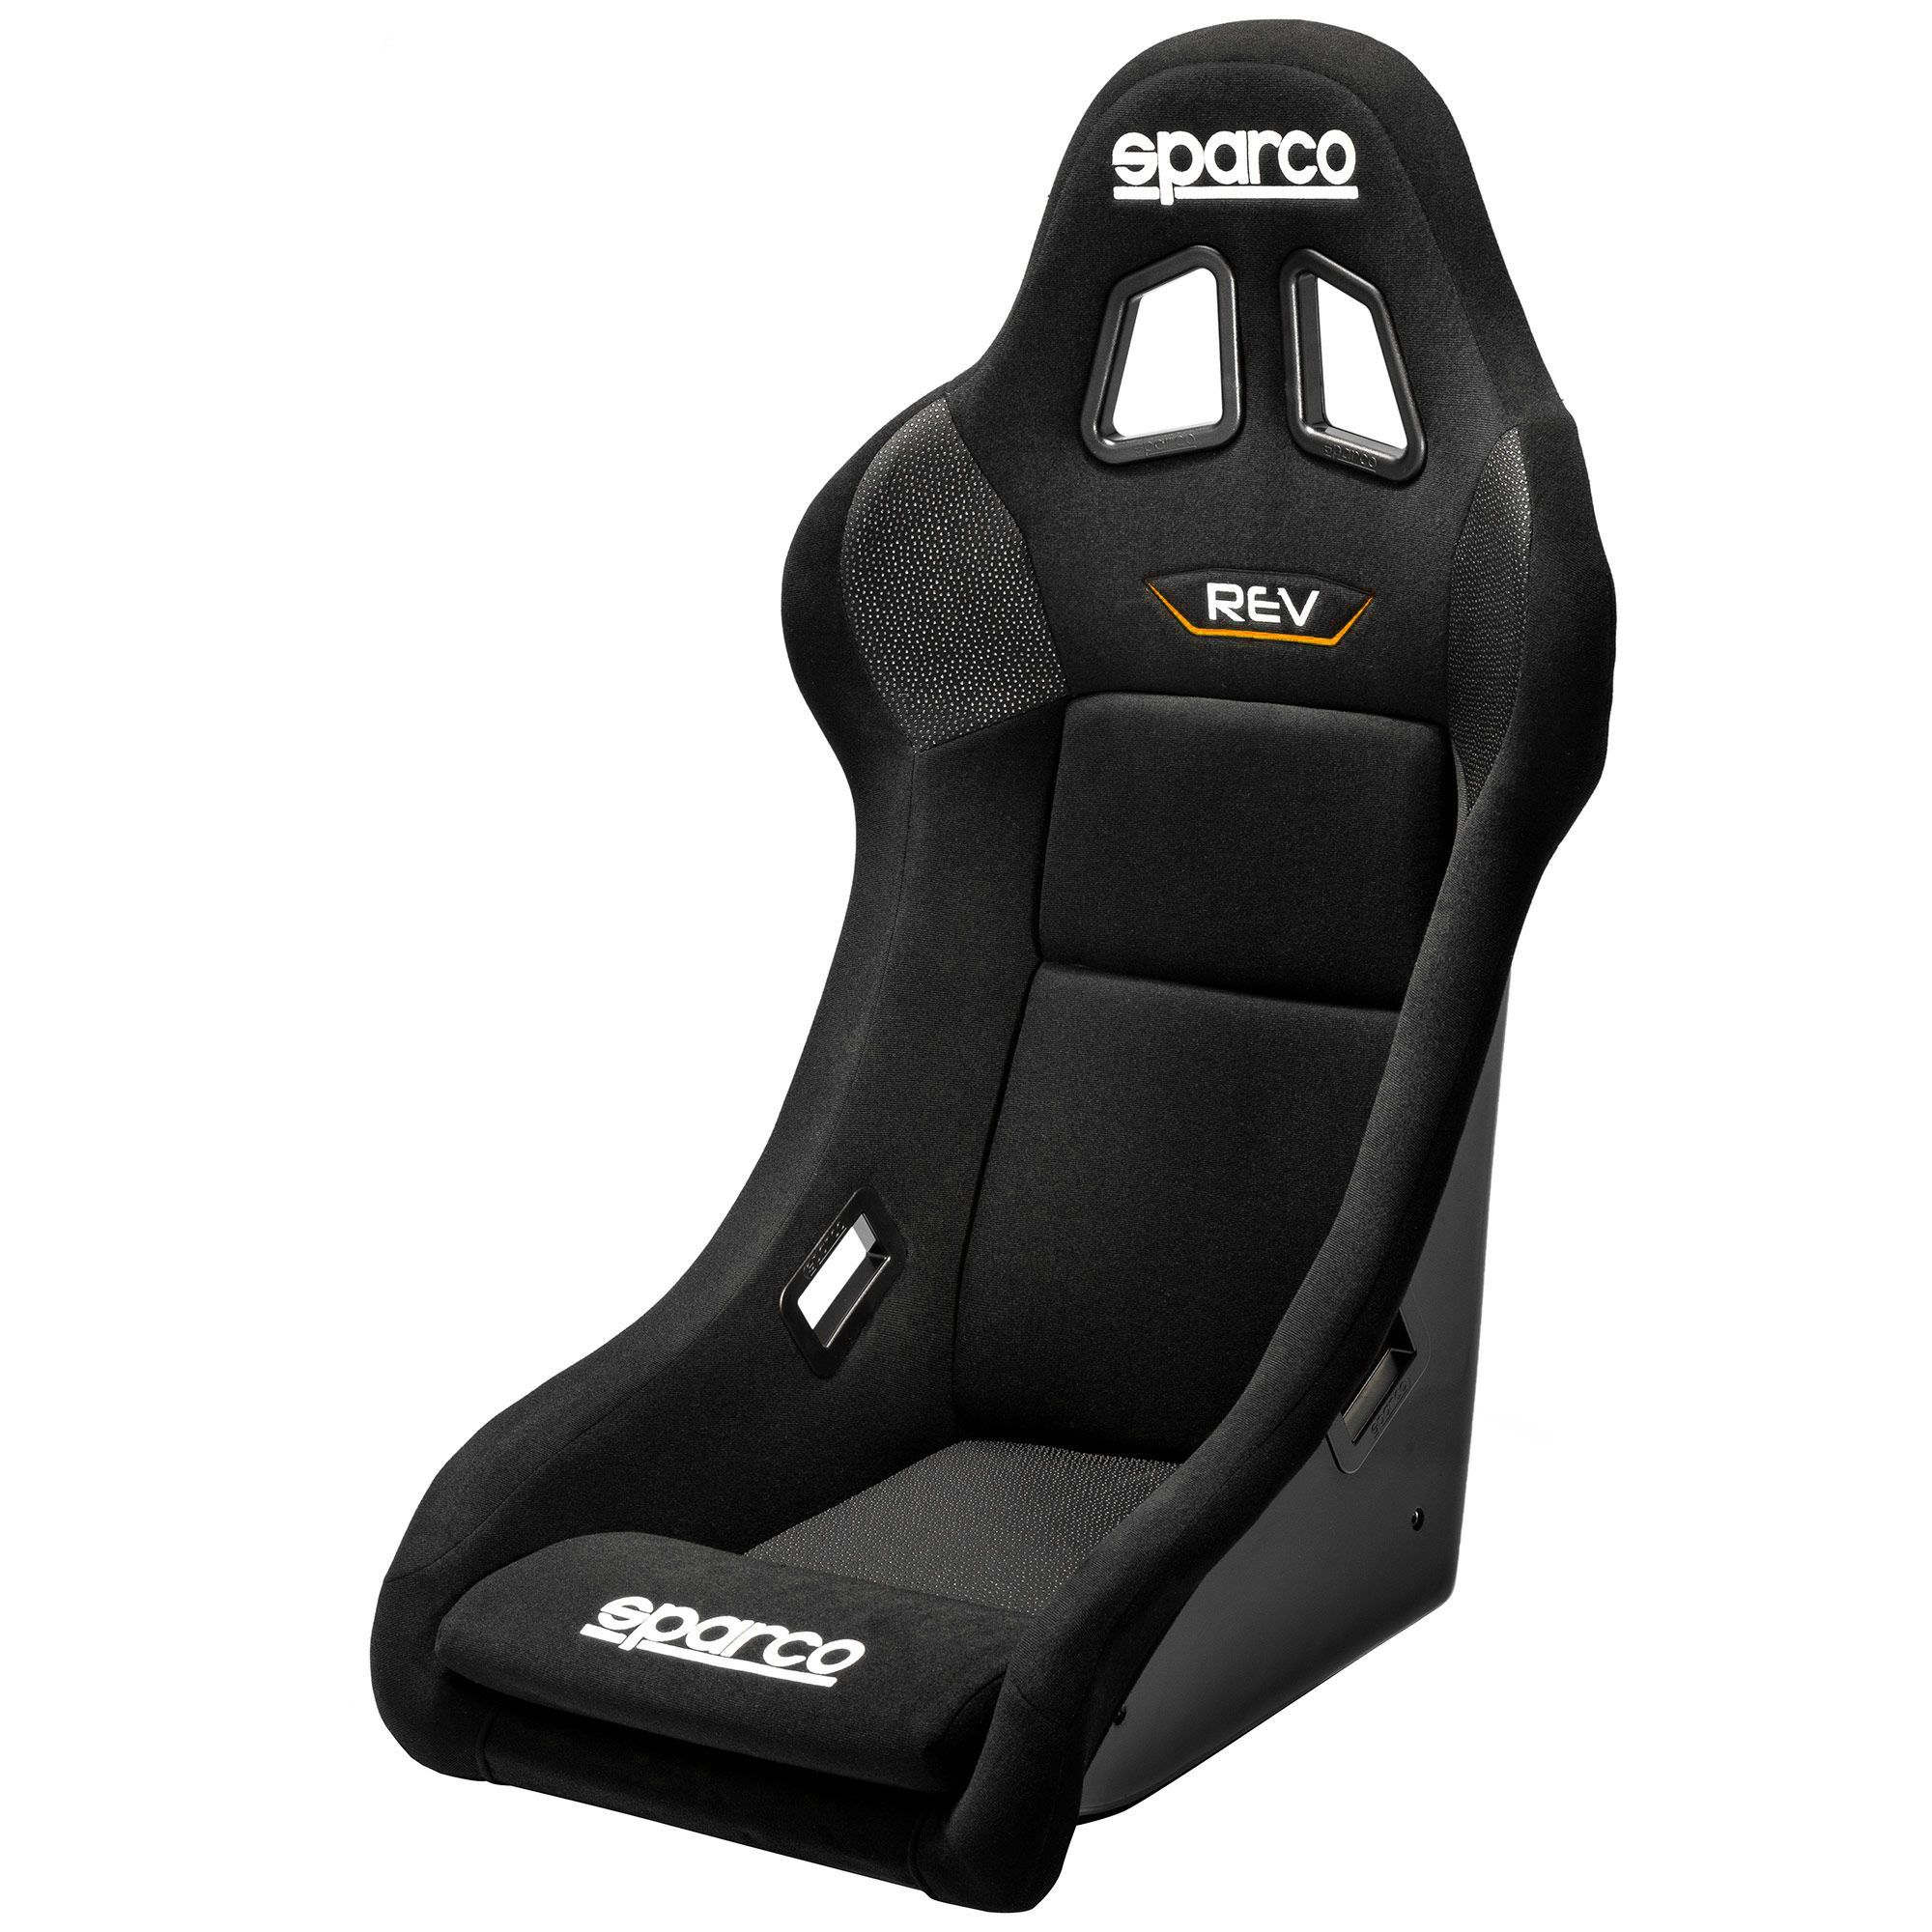 Sparco Gaming Rev Seat (Play Seat)